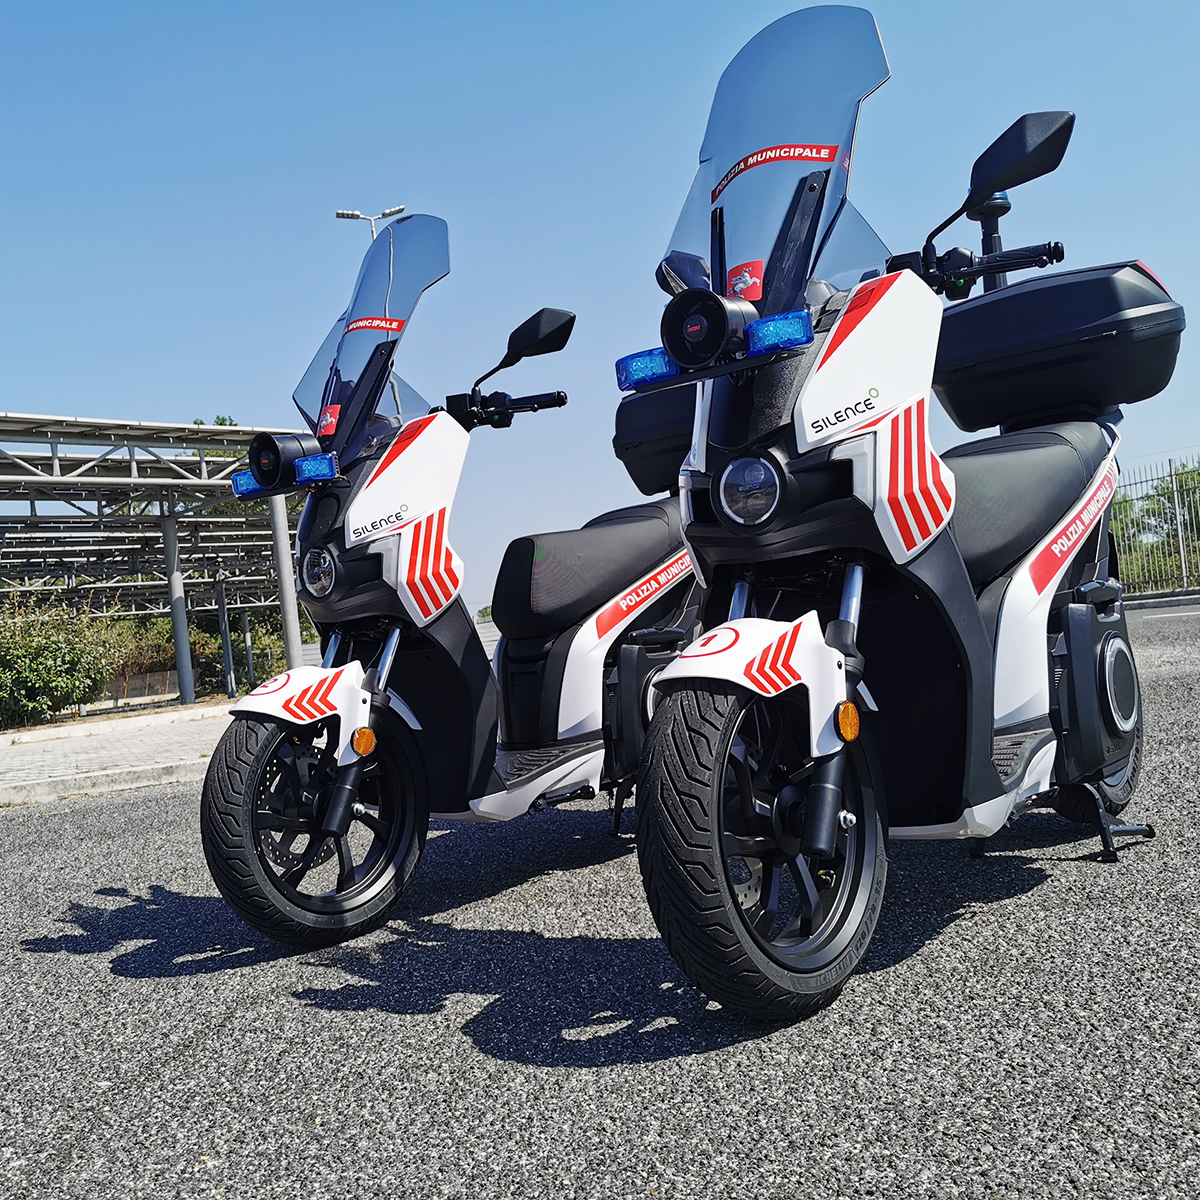 Due scooter Silence S01 in dotazione alla Polizia Municipale di Capalbio